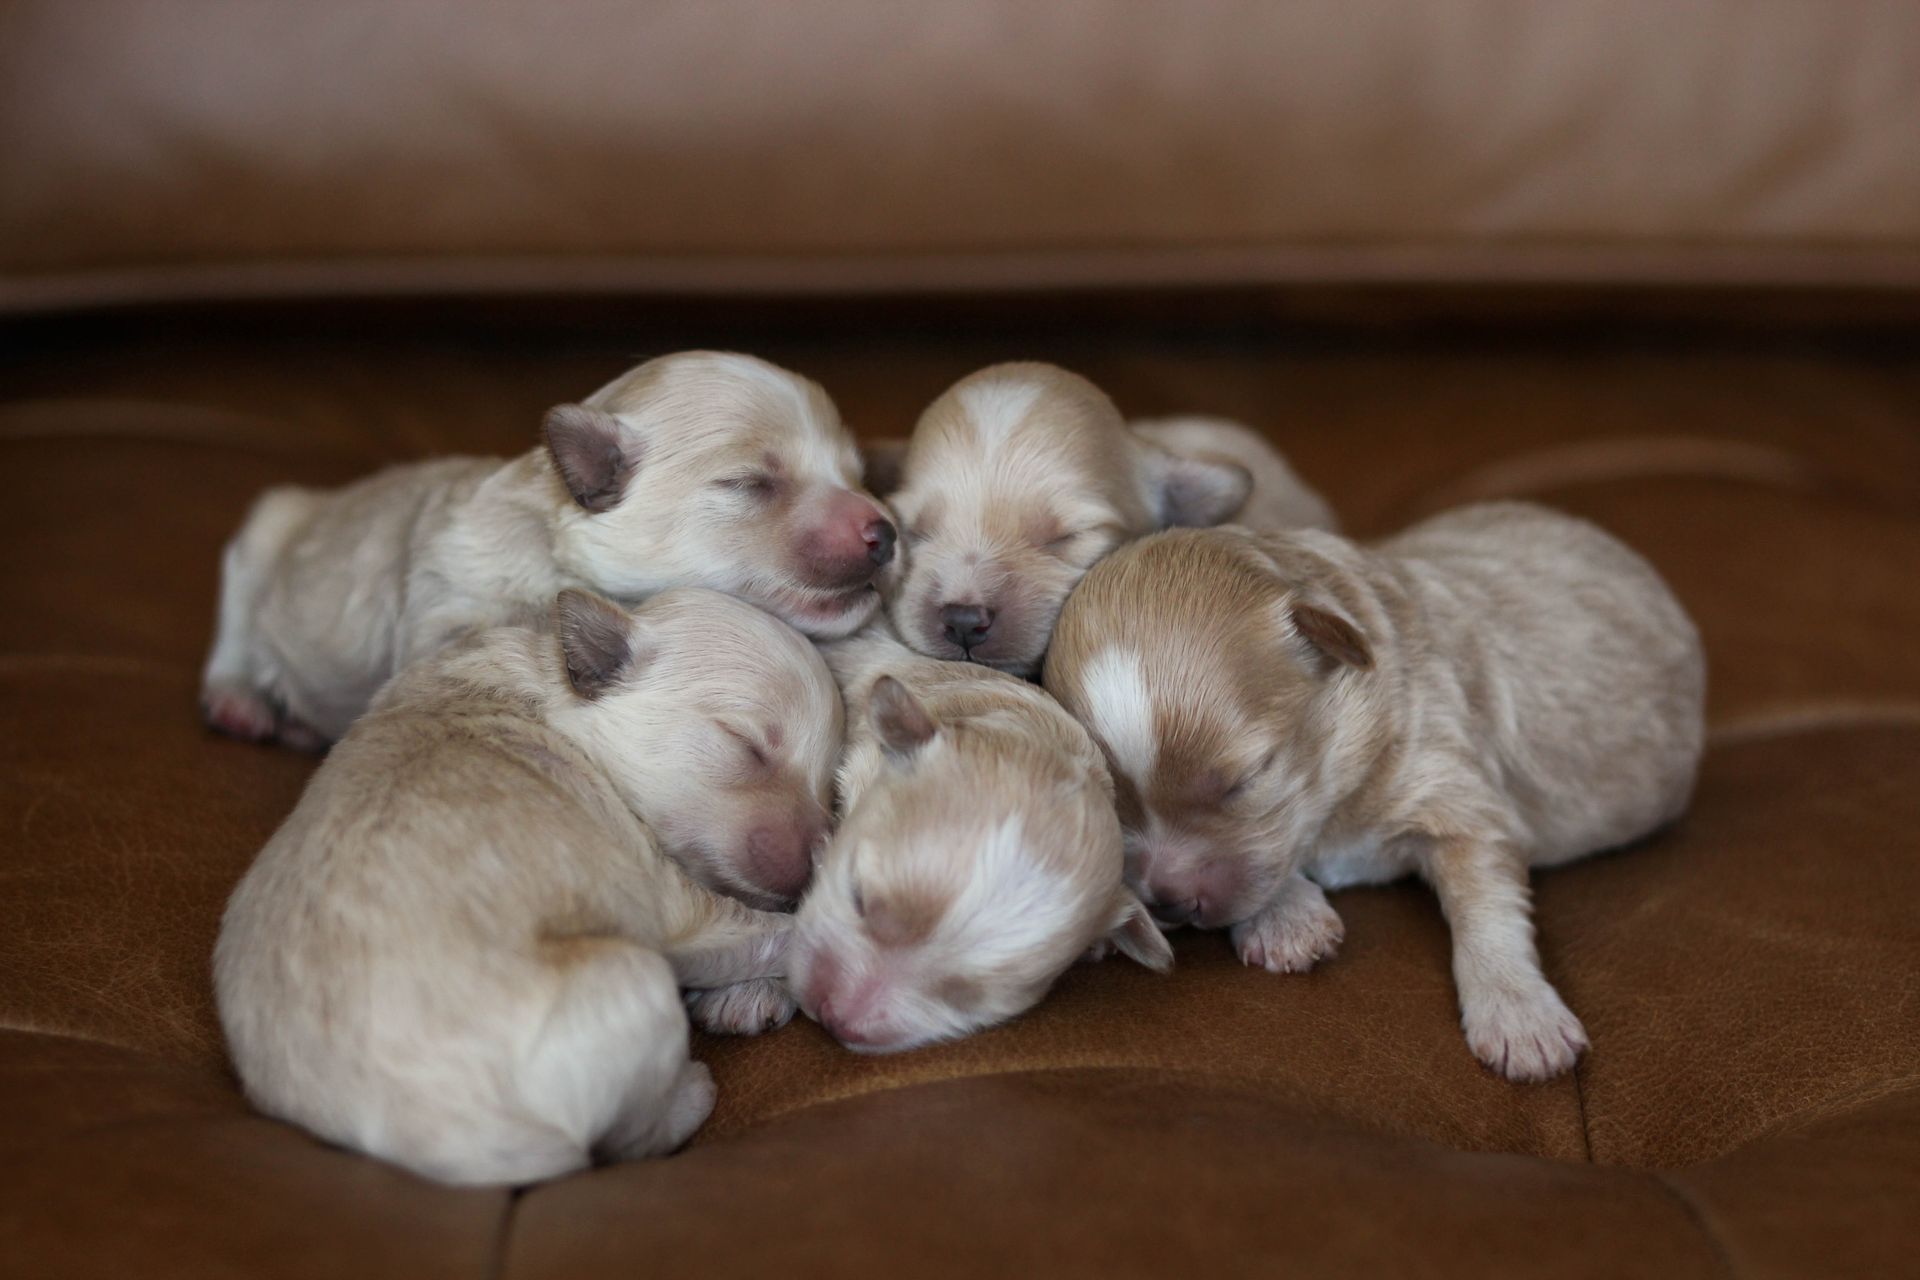 poochon breeder, poochon puppies for sale, poochon puppies, Poochon puppies for sale, shihpoo puppies for sale, maltipoo puppies for sale, teddybear puppies for sale, poochon breeder, maltipoo breeder, maltipoo, poochon, shihpoo, shihpoo  puppy, maltipoo puppy, poochon puppy, bichpoo puppies for sale, bichpoo breeder, puppies for sale, puppies, teddybear puppy 